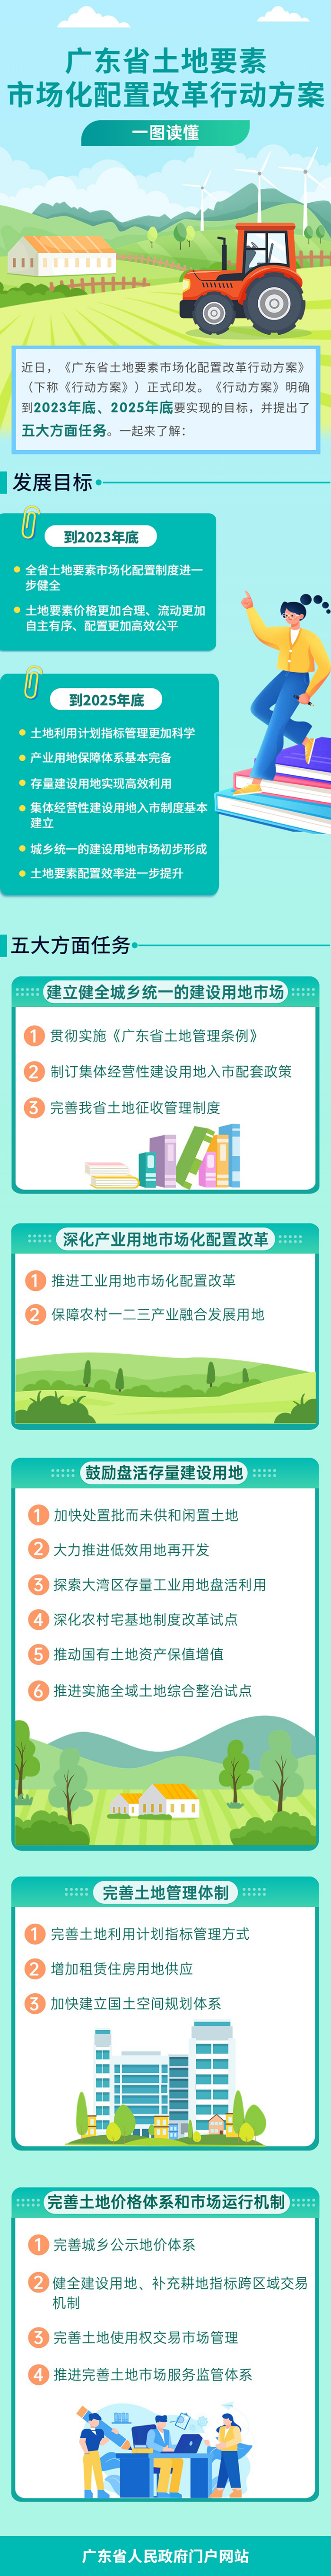 一图读懂广东省土地要素市场化配置改革行动方案.jpg